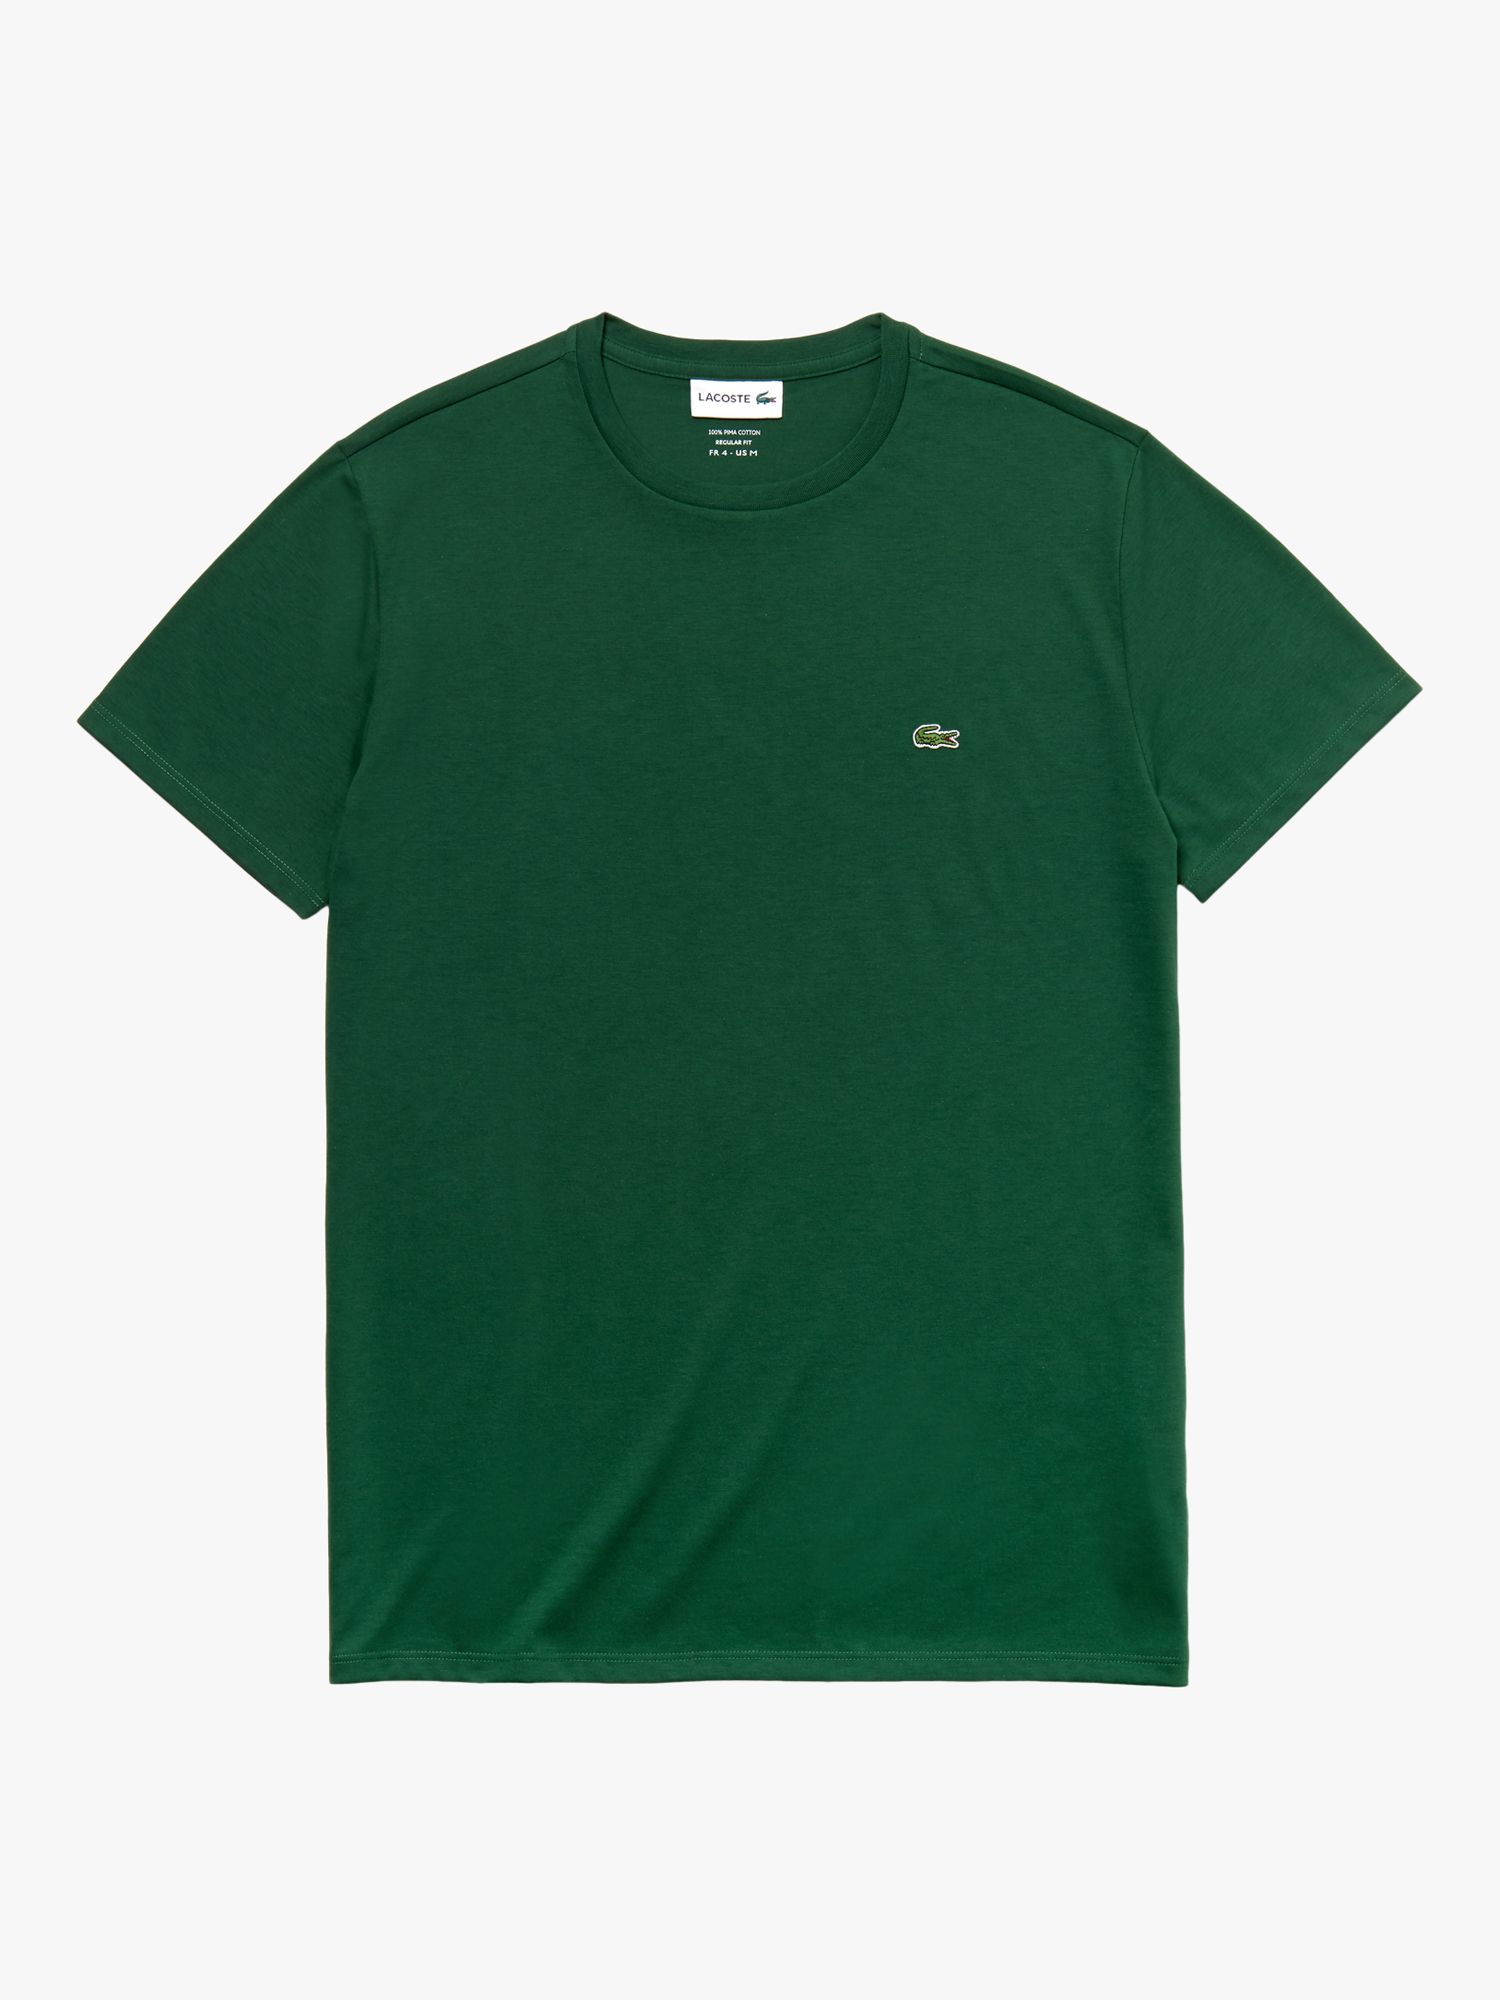 Хлопковая футболка с круглым вырезом Lacoste Classic Pima, зеленая